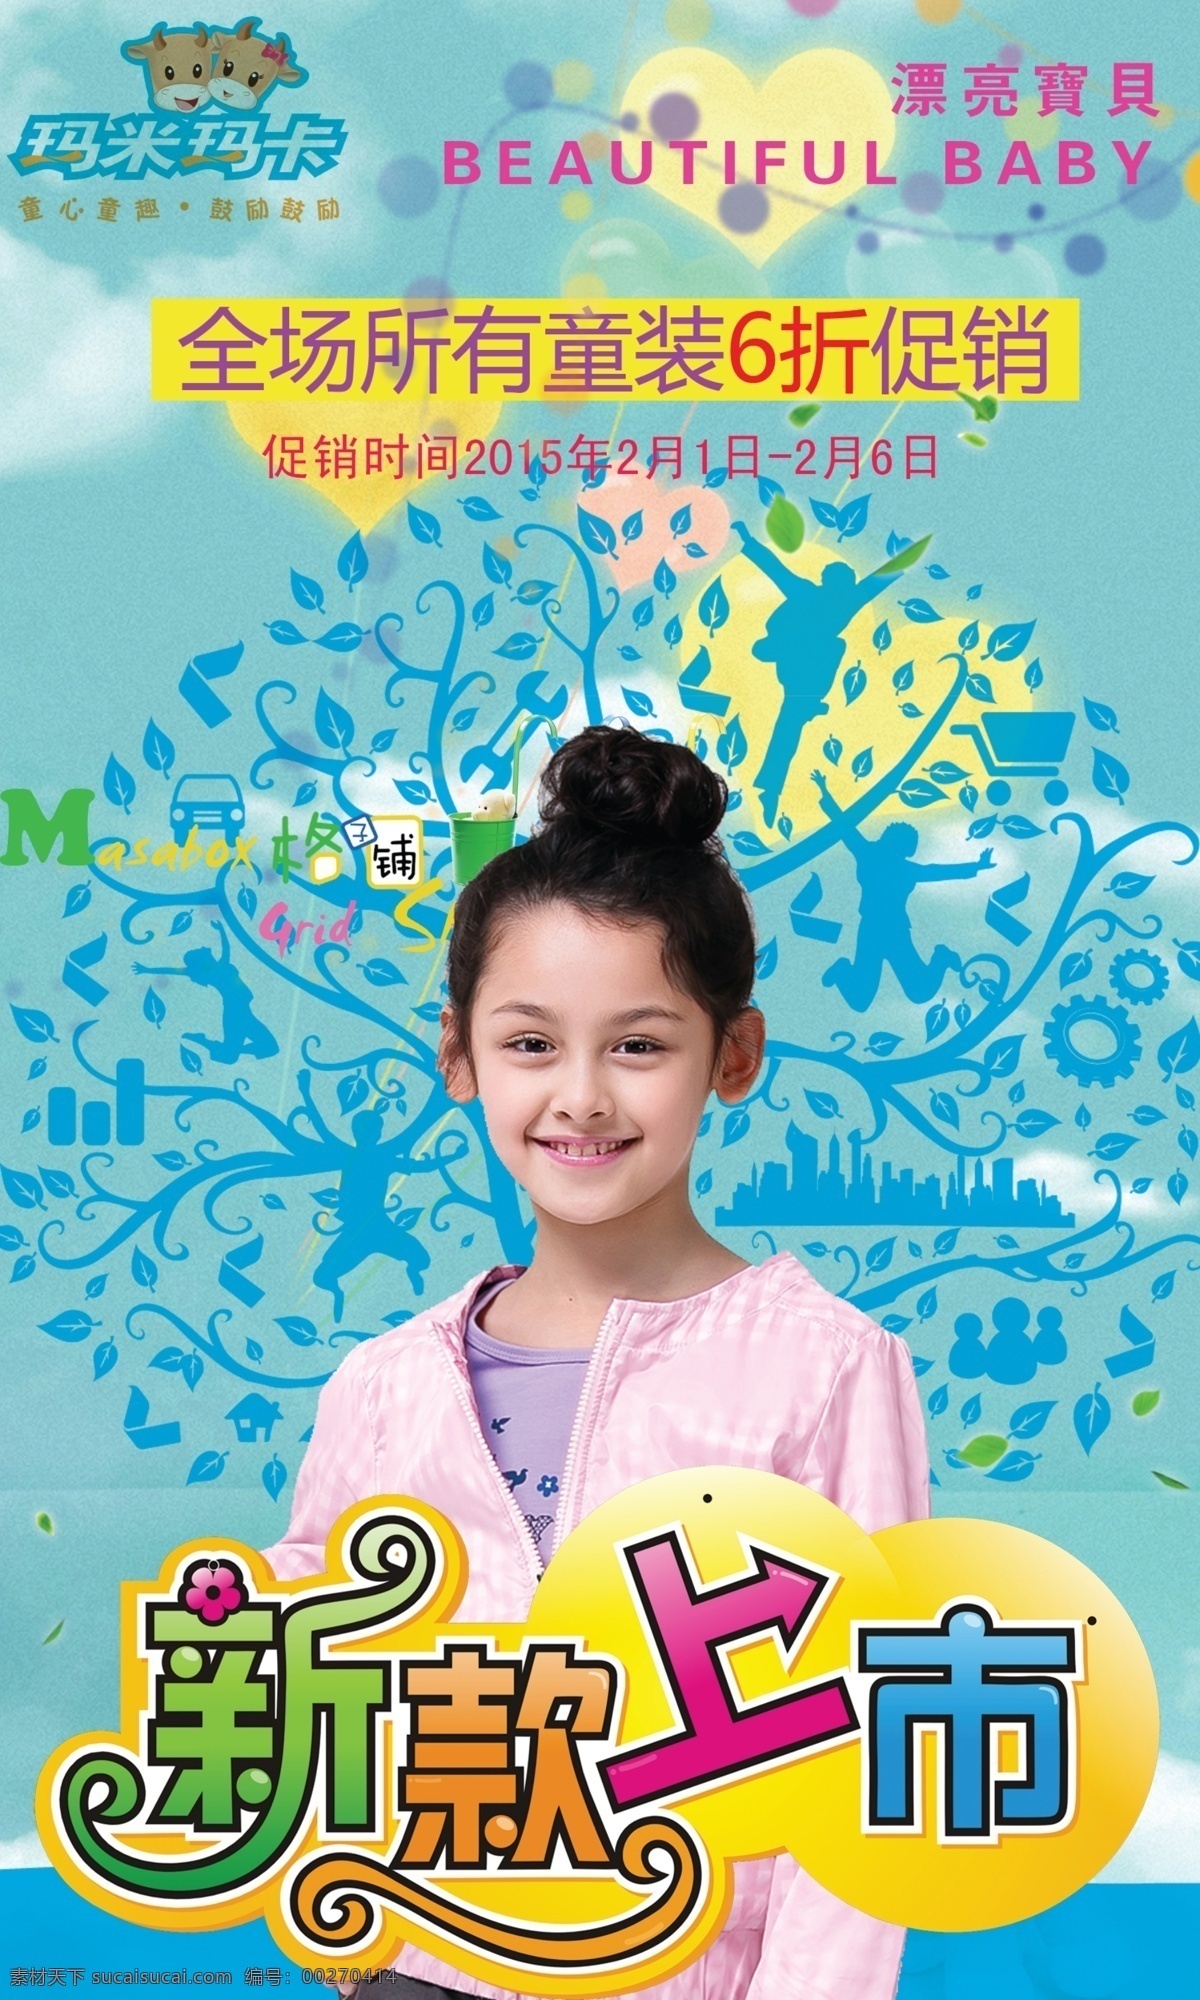 2015 年 玛米 玛卡 童装 店 促销 海报 促销海报 童装促销 童装海报 原创设计 原创海报